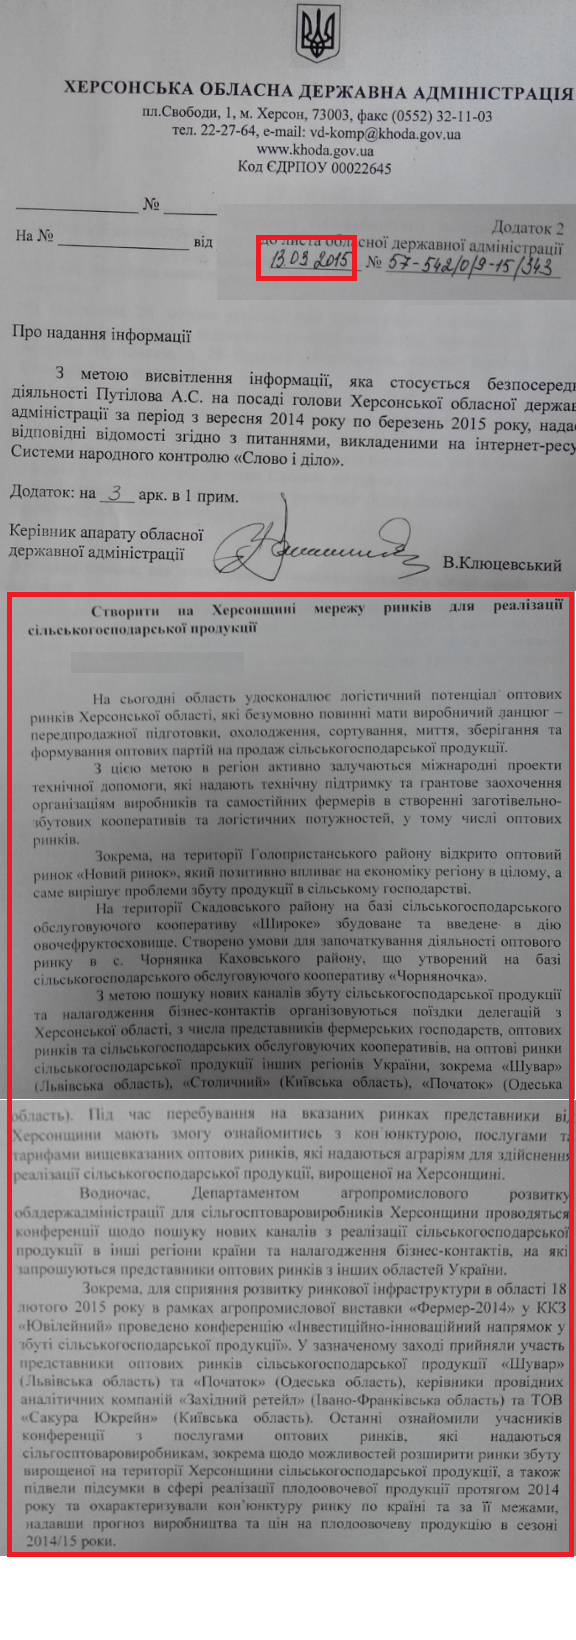 Лист керівника апарату ОДА В. Клюцевського